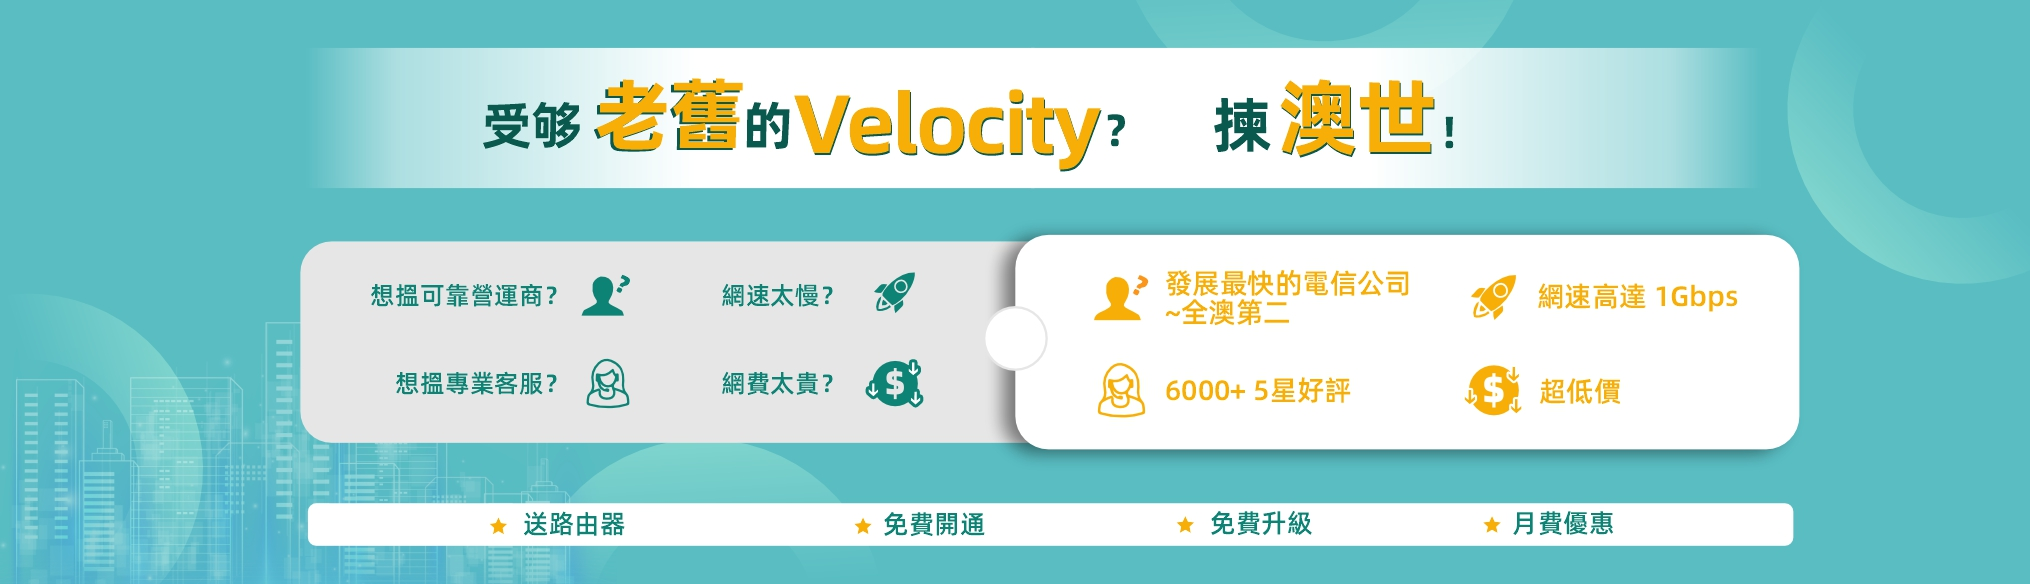 velocity promotion